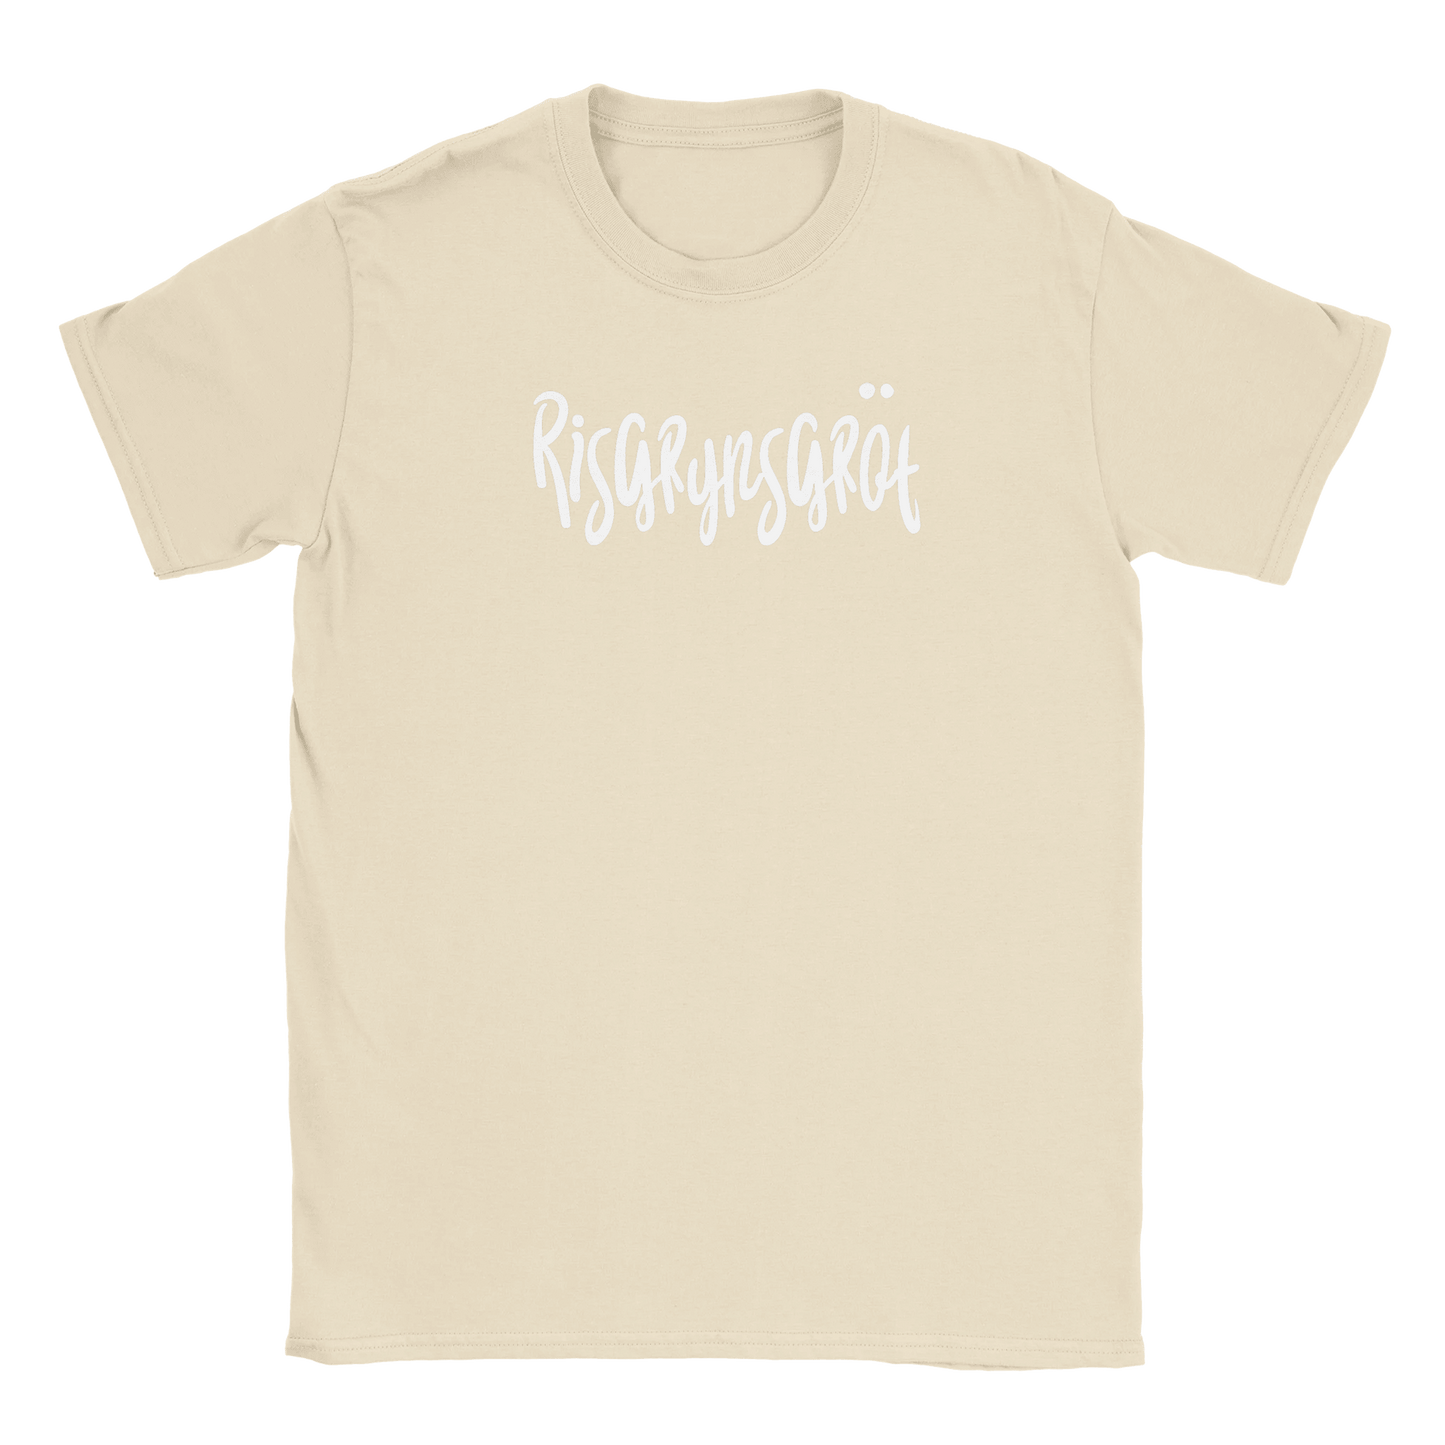 Risgrynsgröt - T-shirt Beige